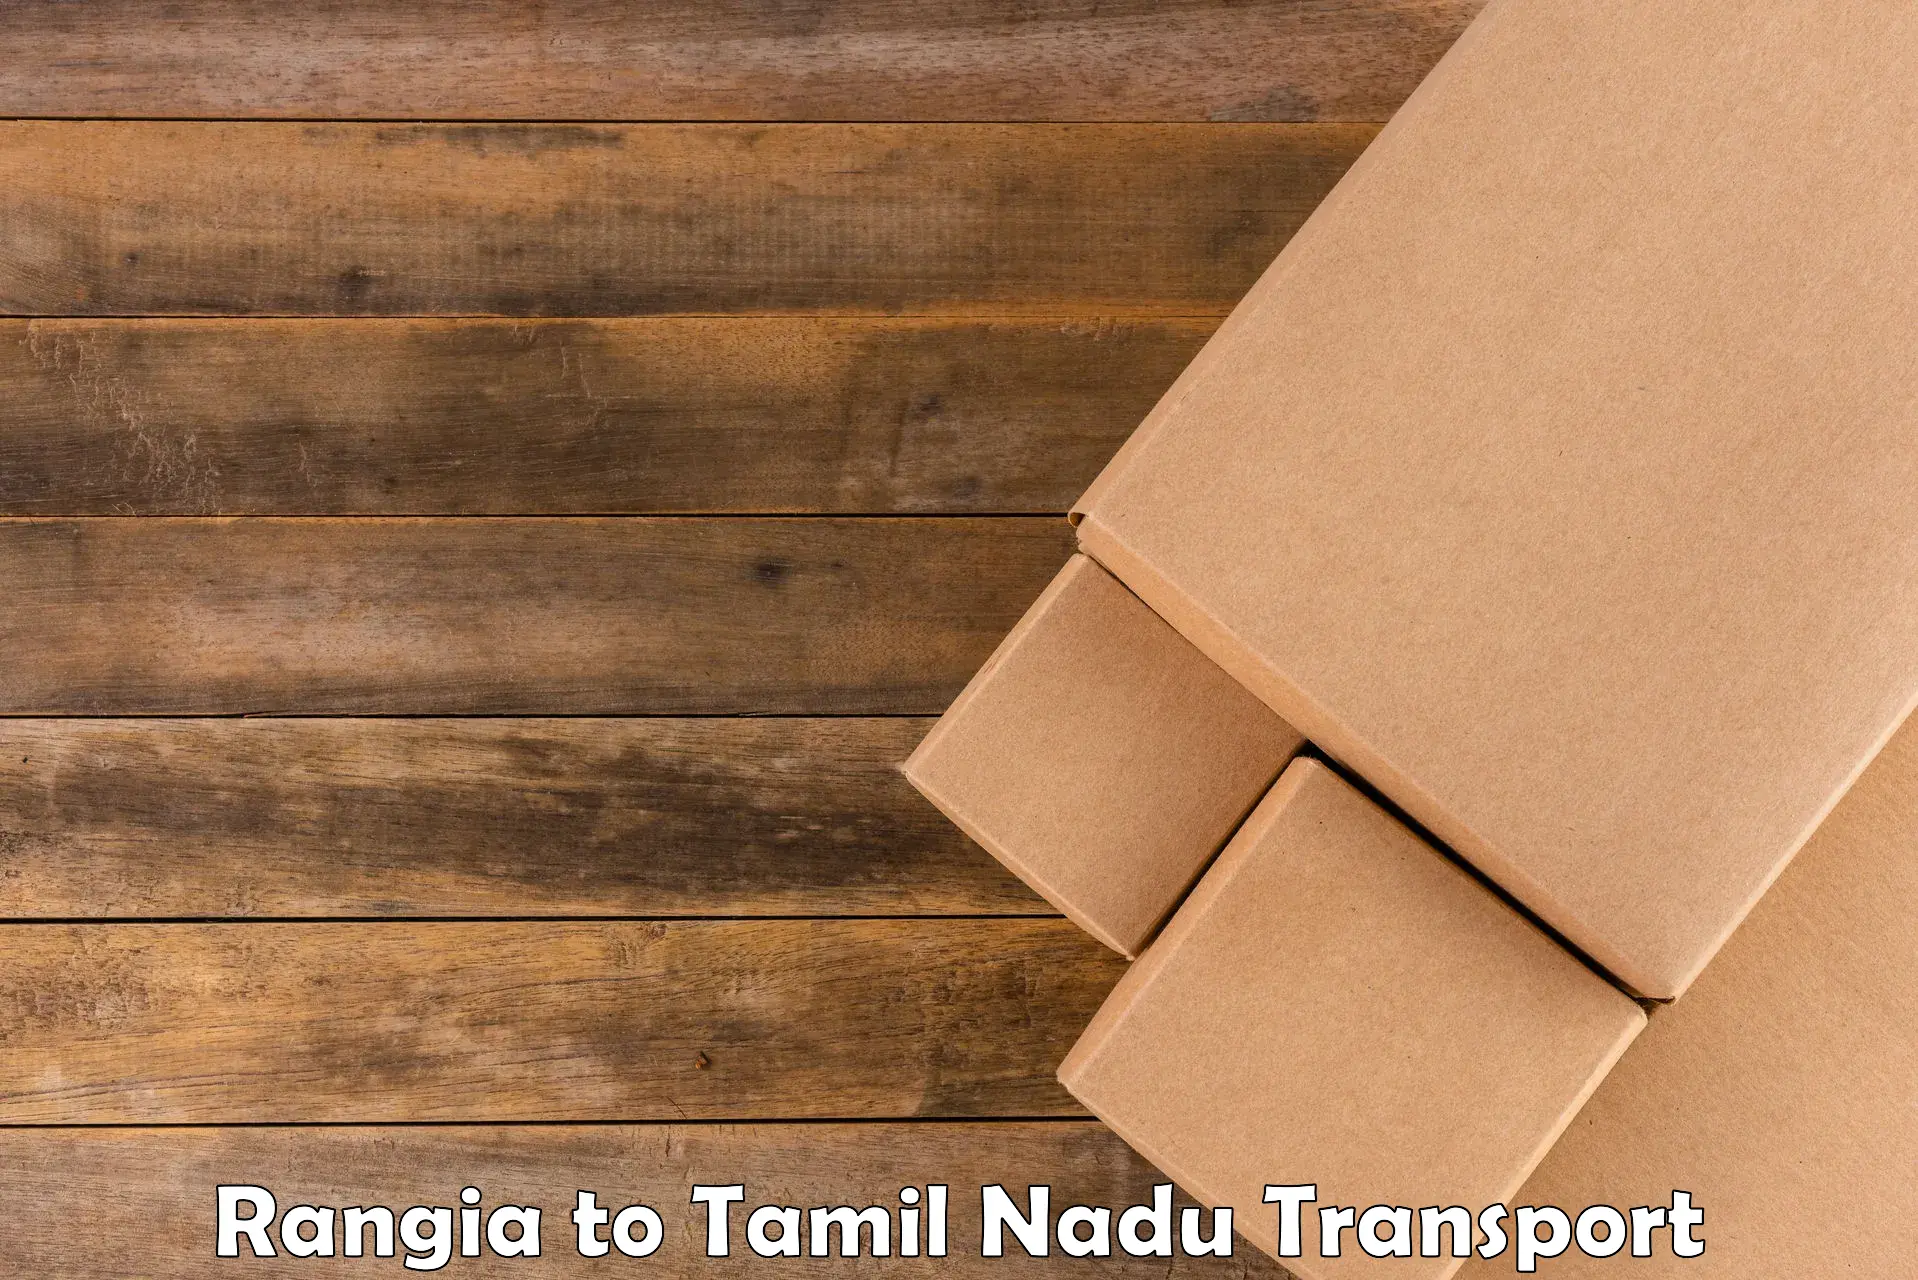 Door to door transport services in Rangia to Tamil Nadu